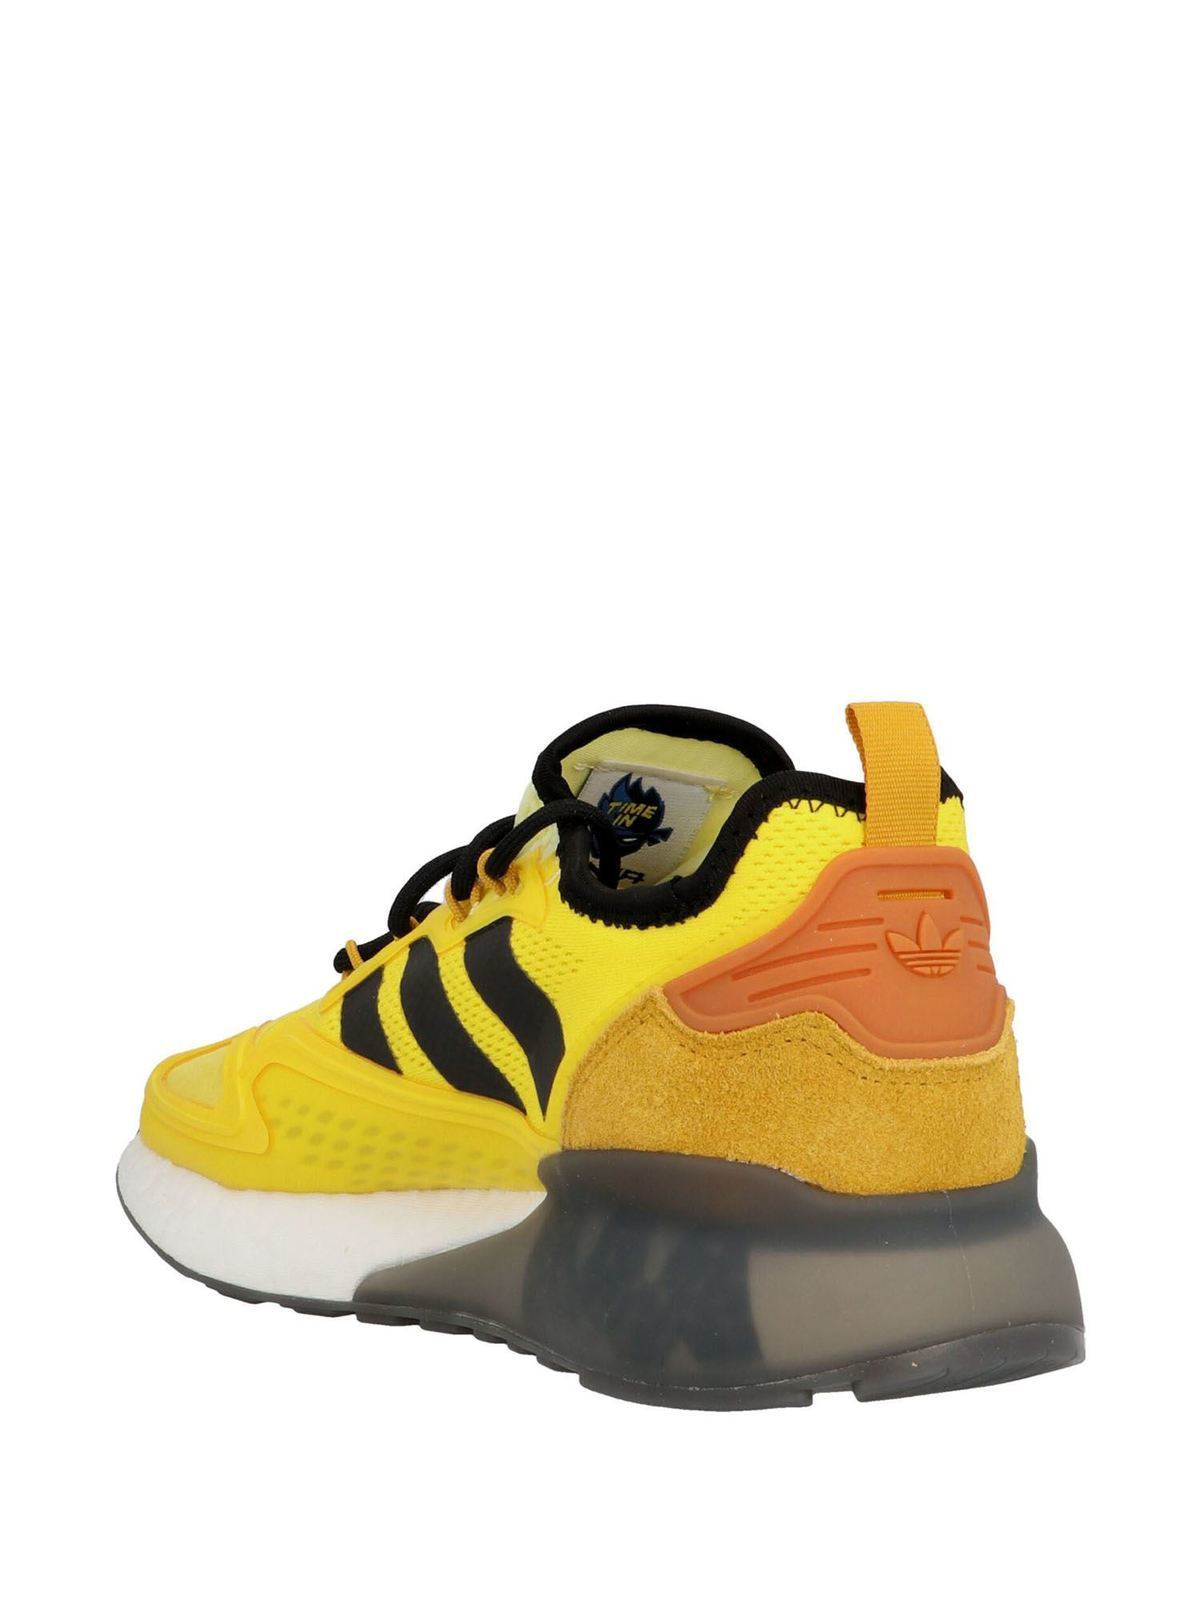 Trainers Originals - Ninja ZX 2K sneakers in yellow - FZ1887